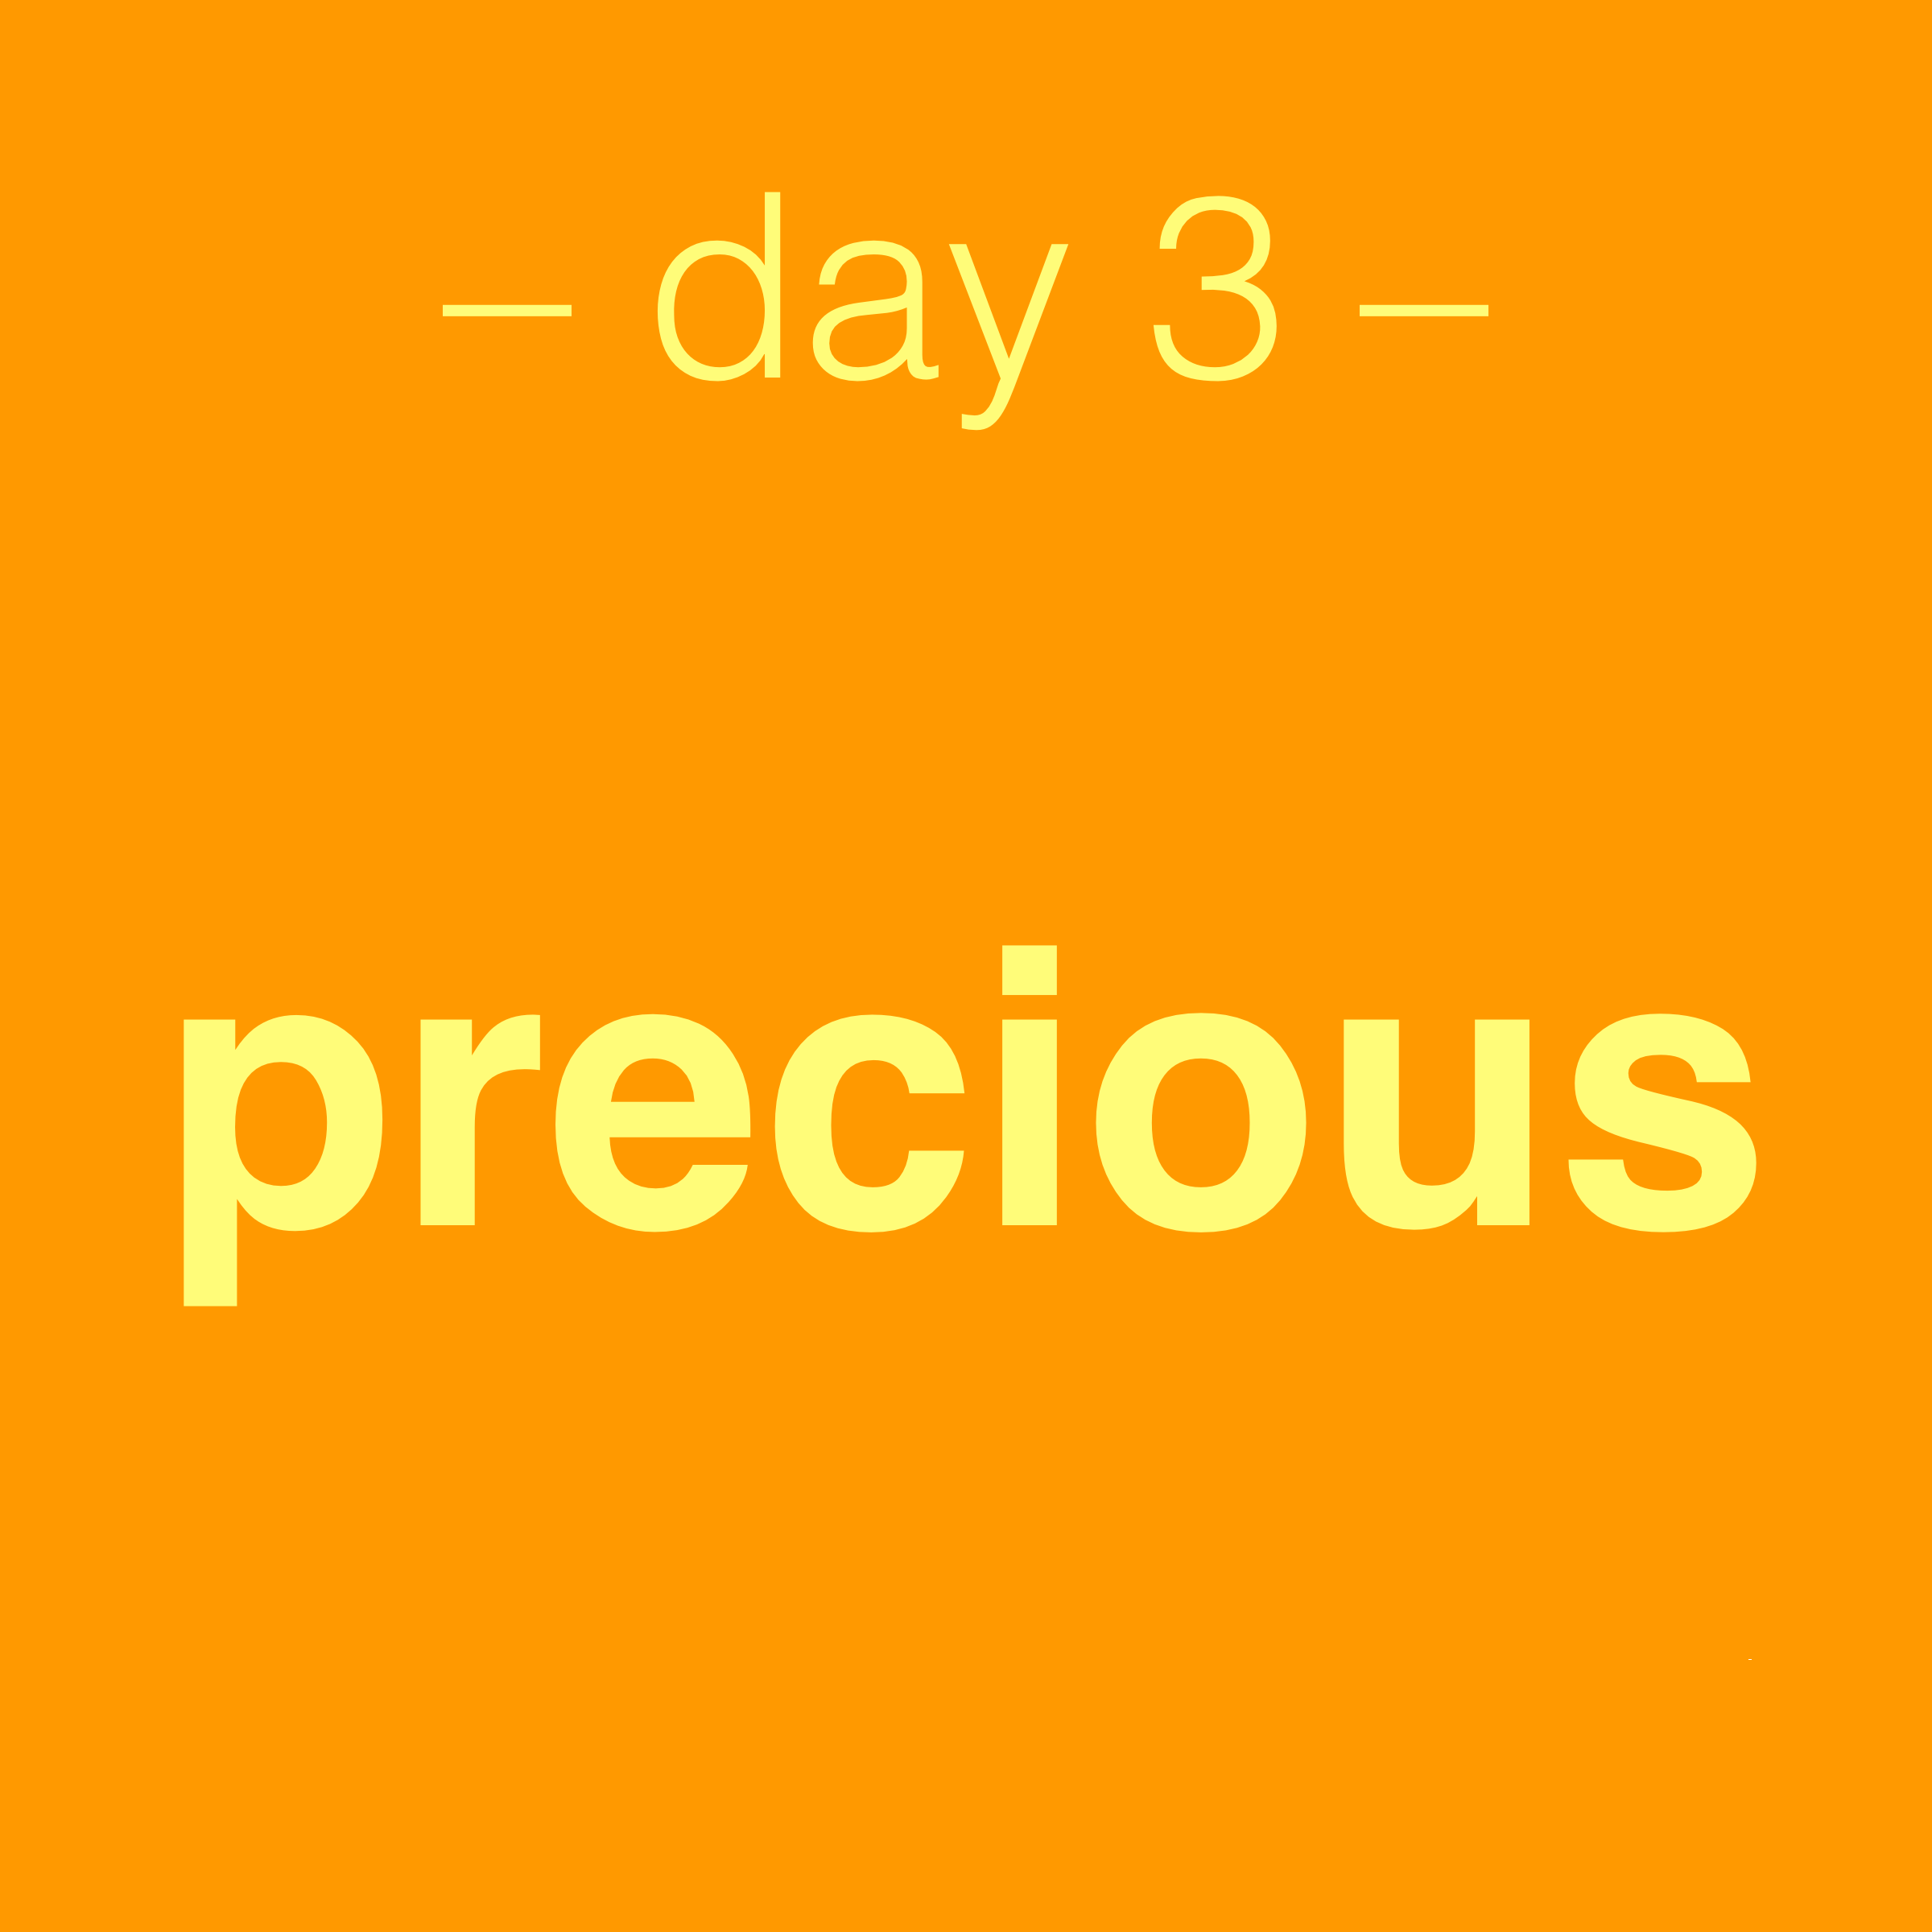 Day 3: precious